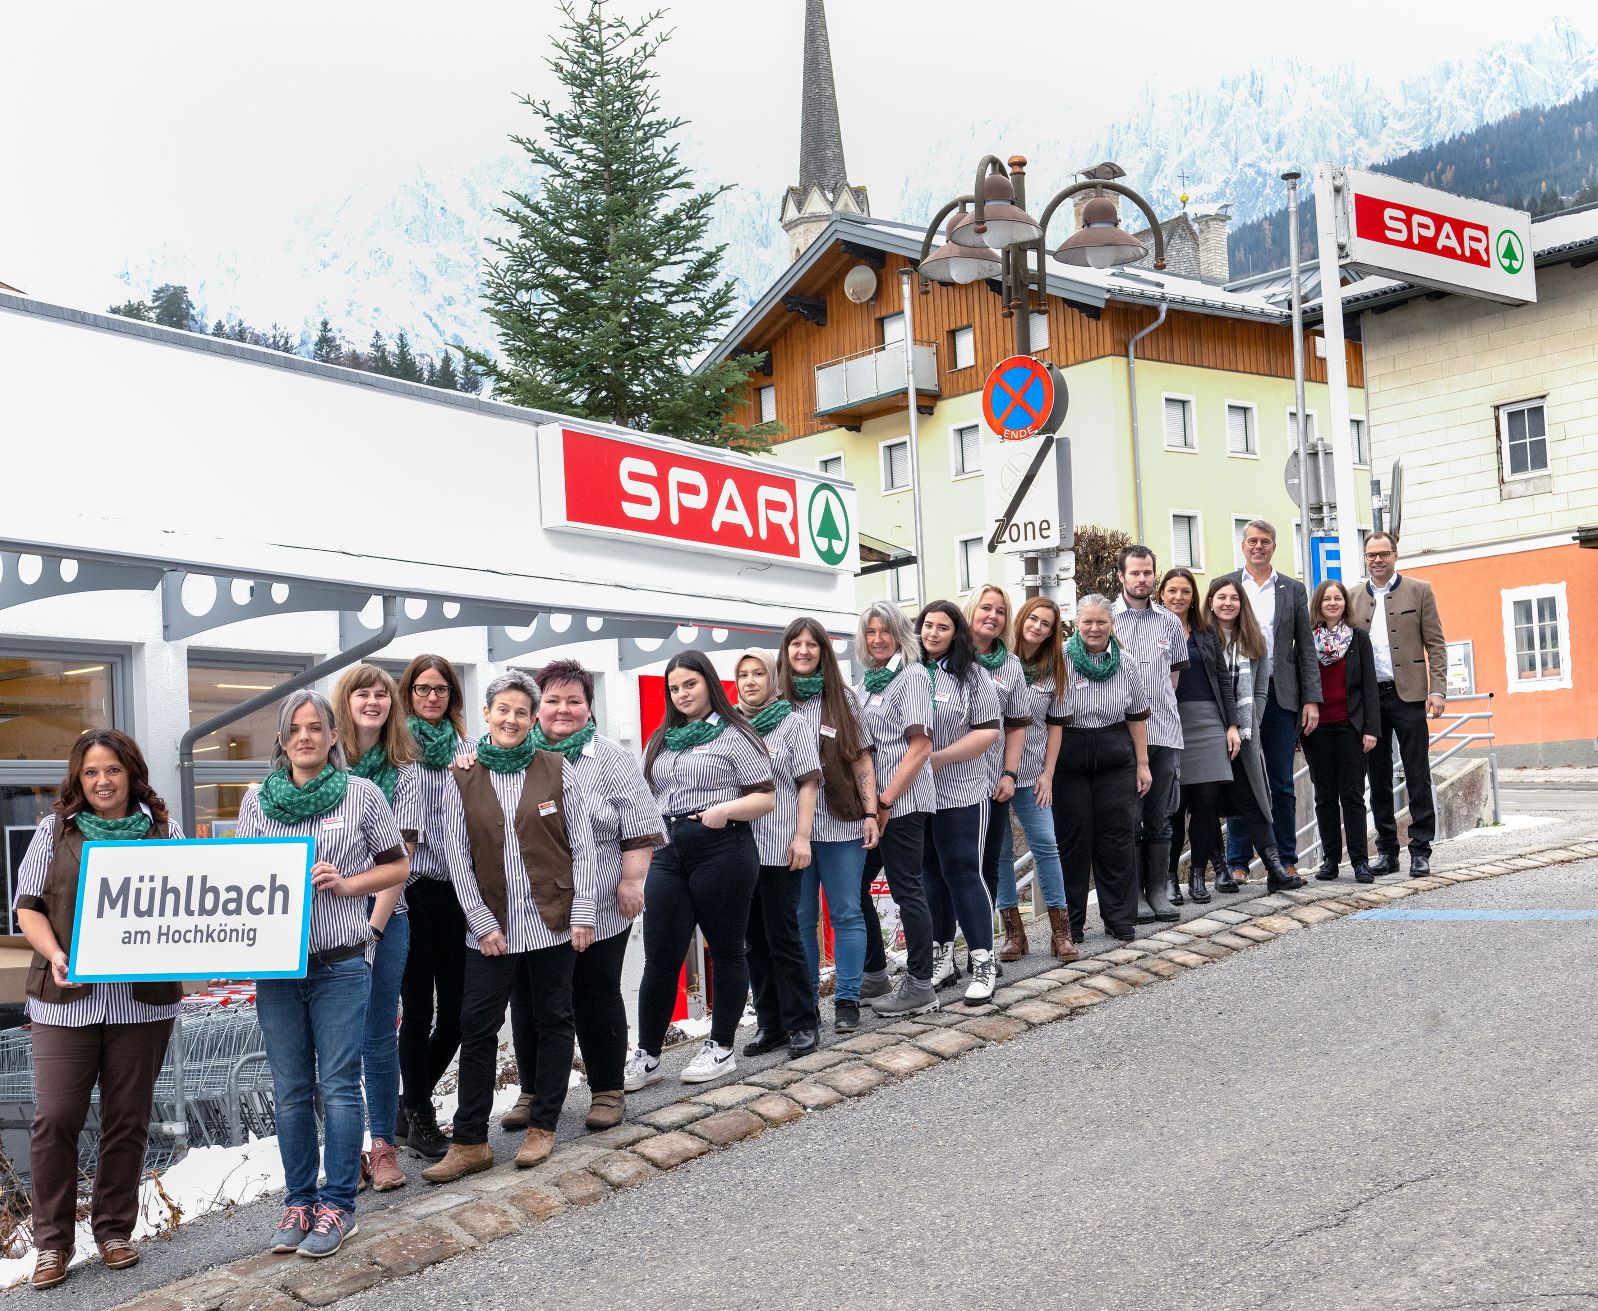 Das Spar- und Pro Mente Salzburg-Team vor dem Spar-Markt in Mühlbach am Hochkönig